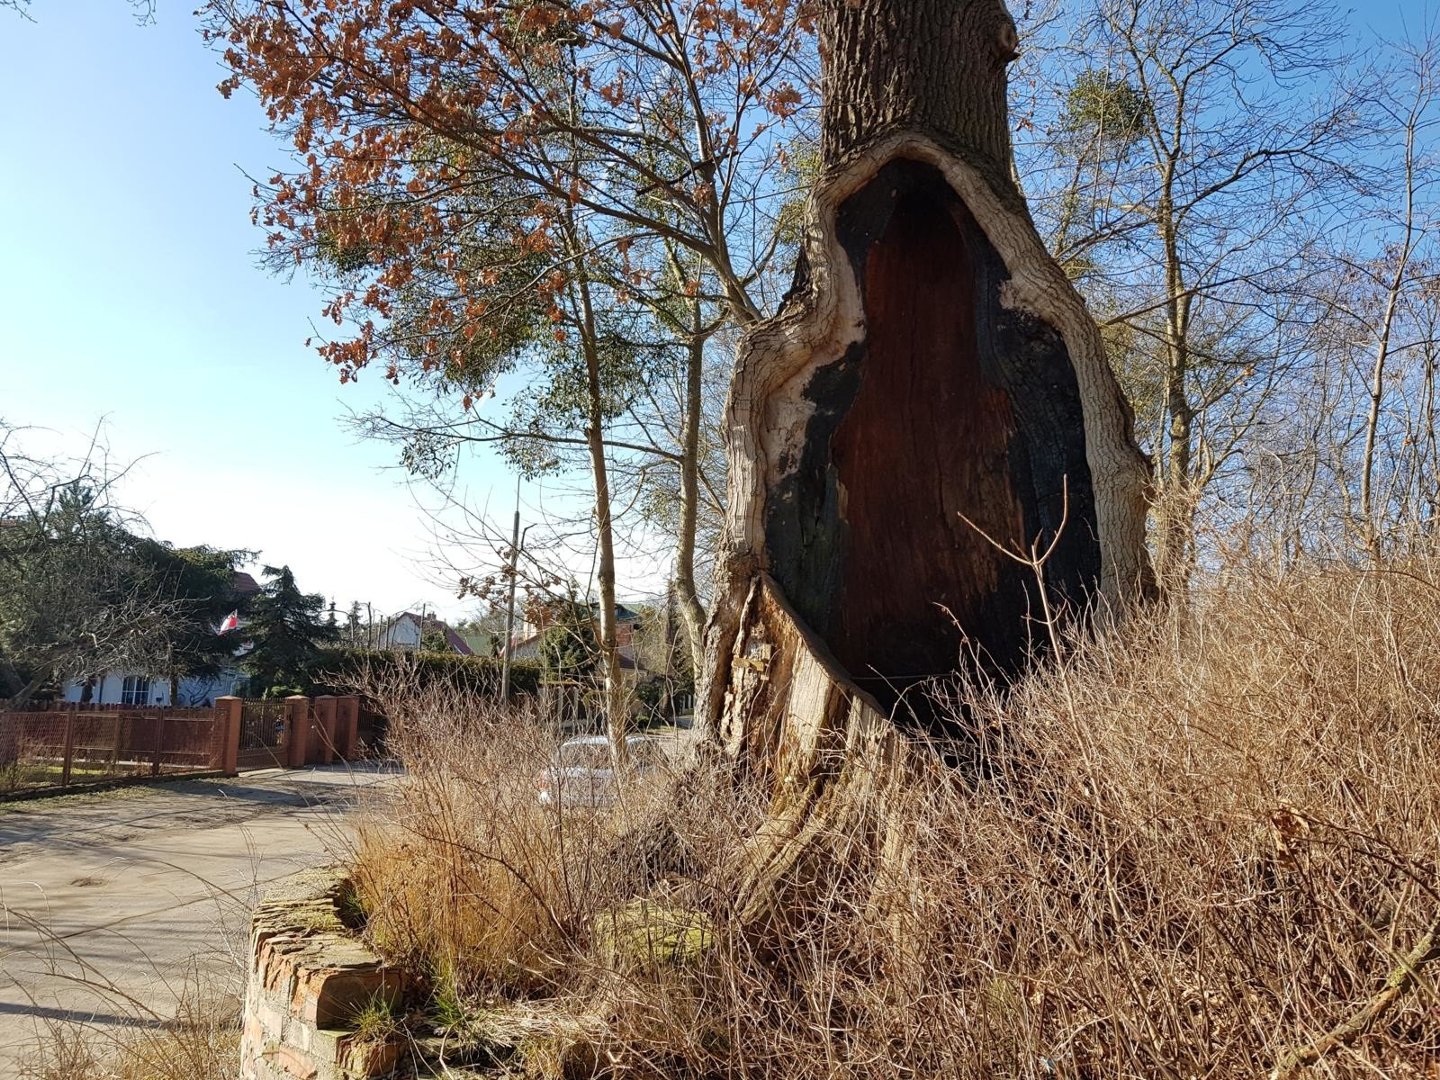 450-letni dąb przy Grunwaldzkiej w Toruniu - pnia tego pomnika przyrody nie  zniszczyła natura. Czytelnik obawia się o kondycję drzewa | Nowości  Dziennik Toruński